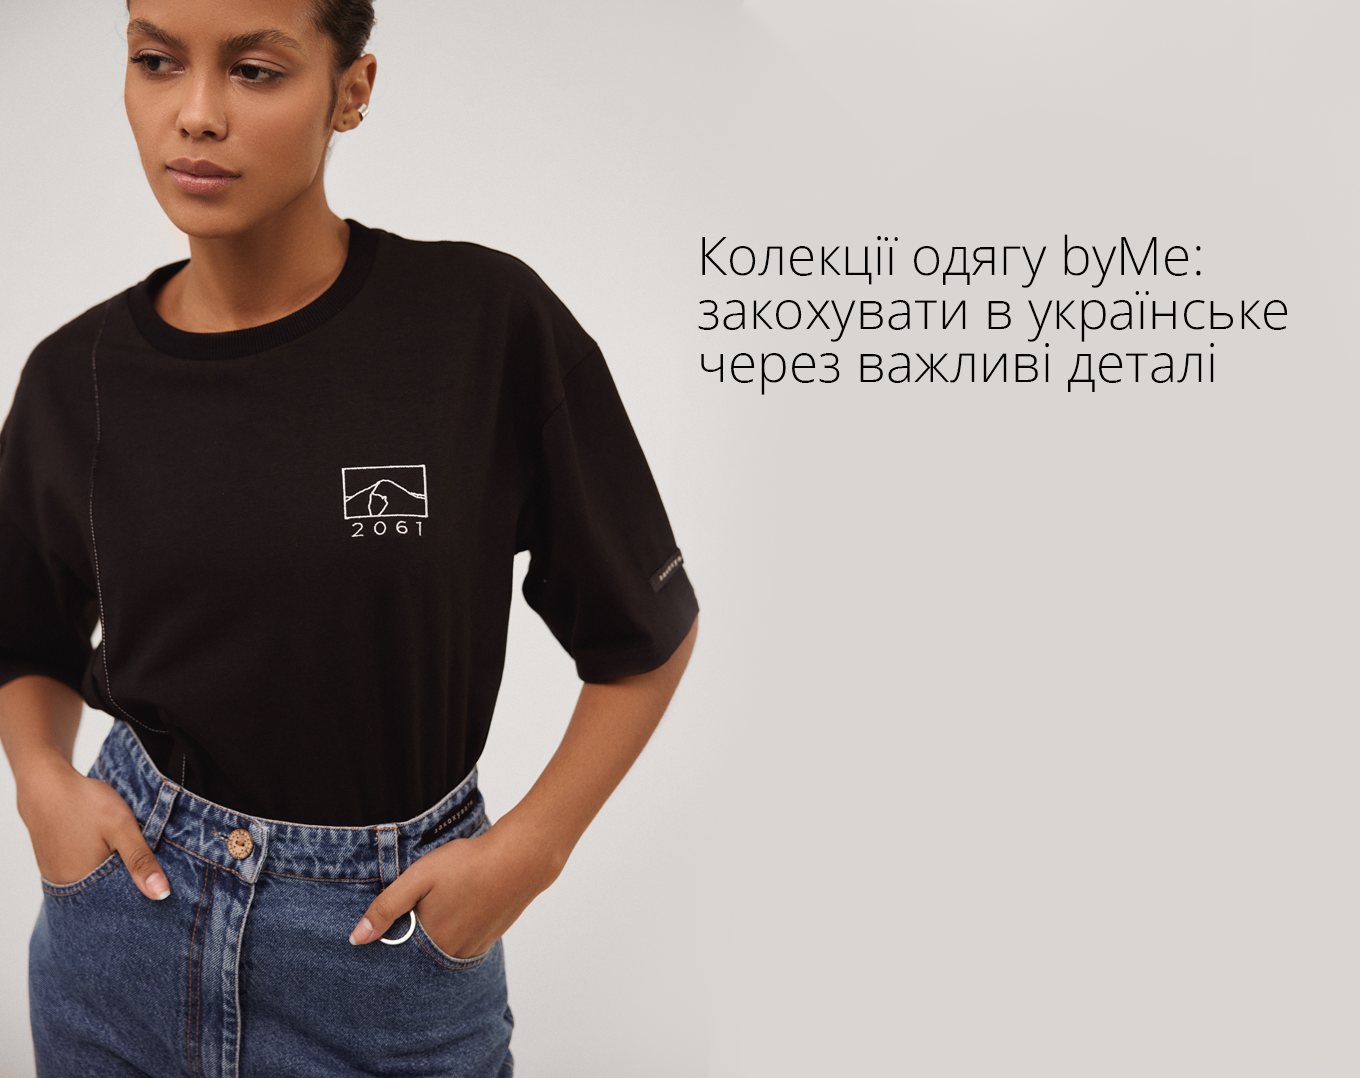 Бренд одягу byMe – про силу кожного закохувати в українське